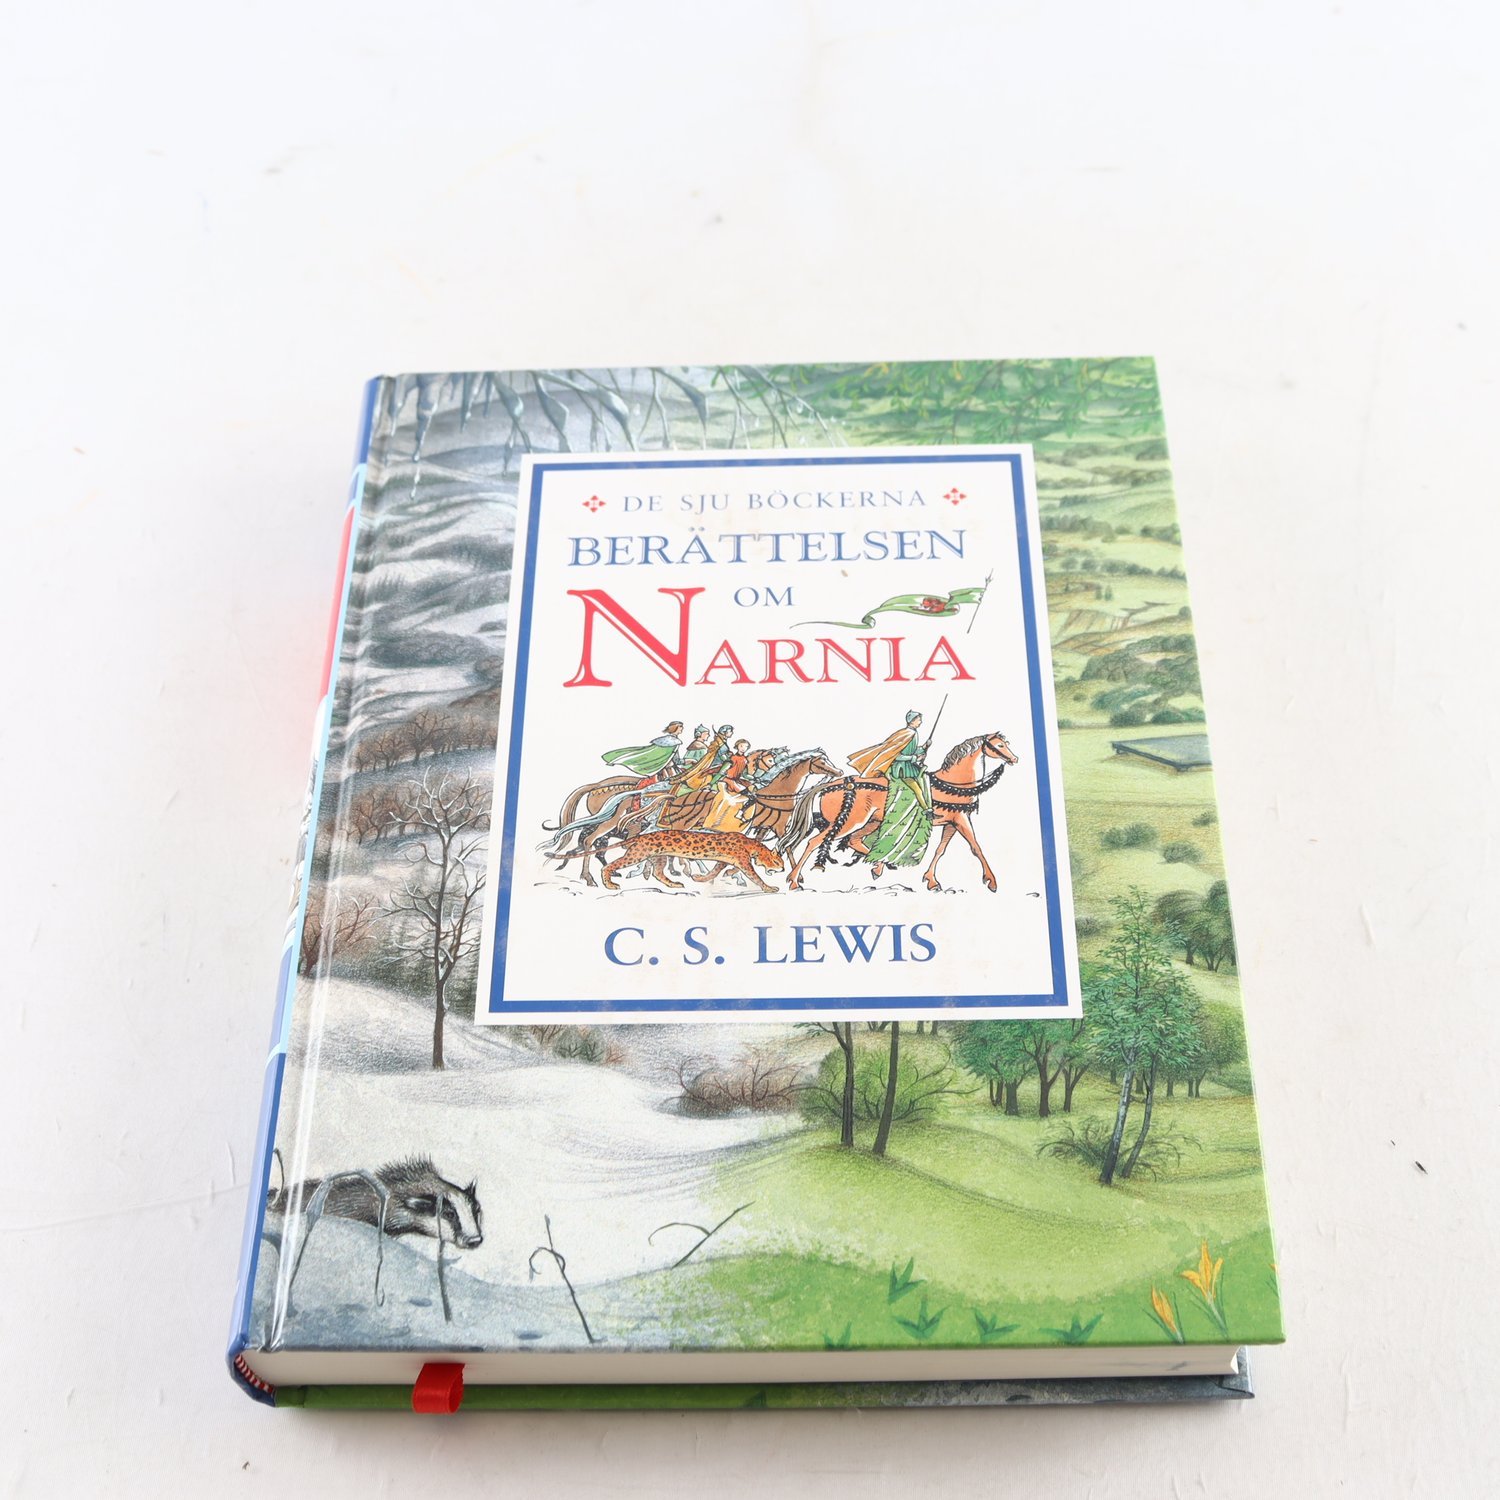 C.S. Lewis, De sju böckerna om Narnia